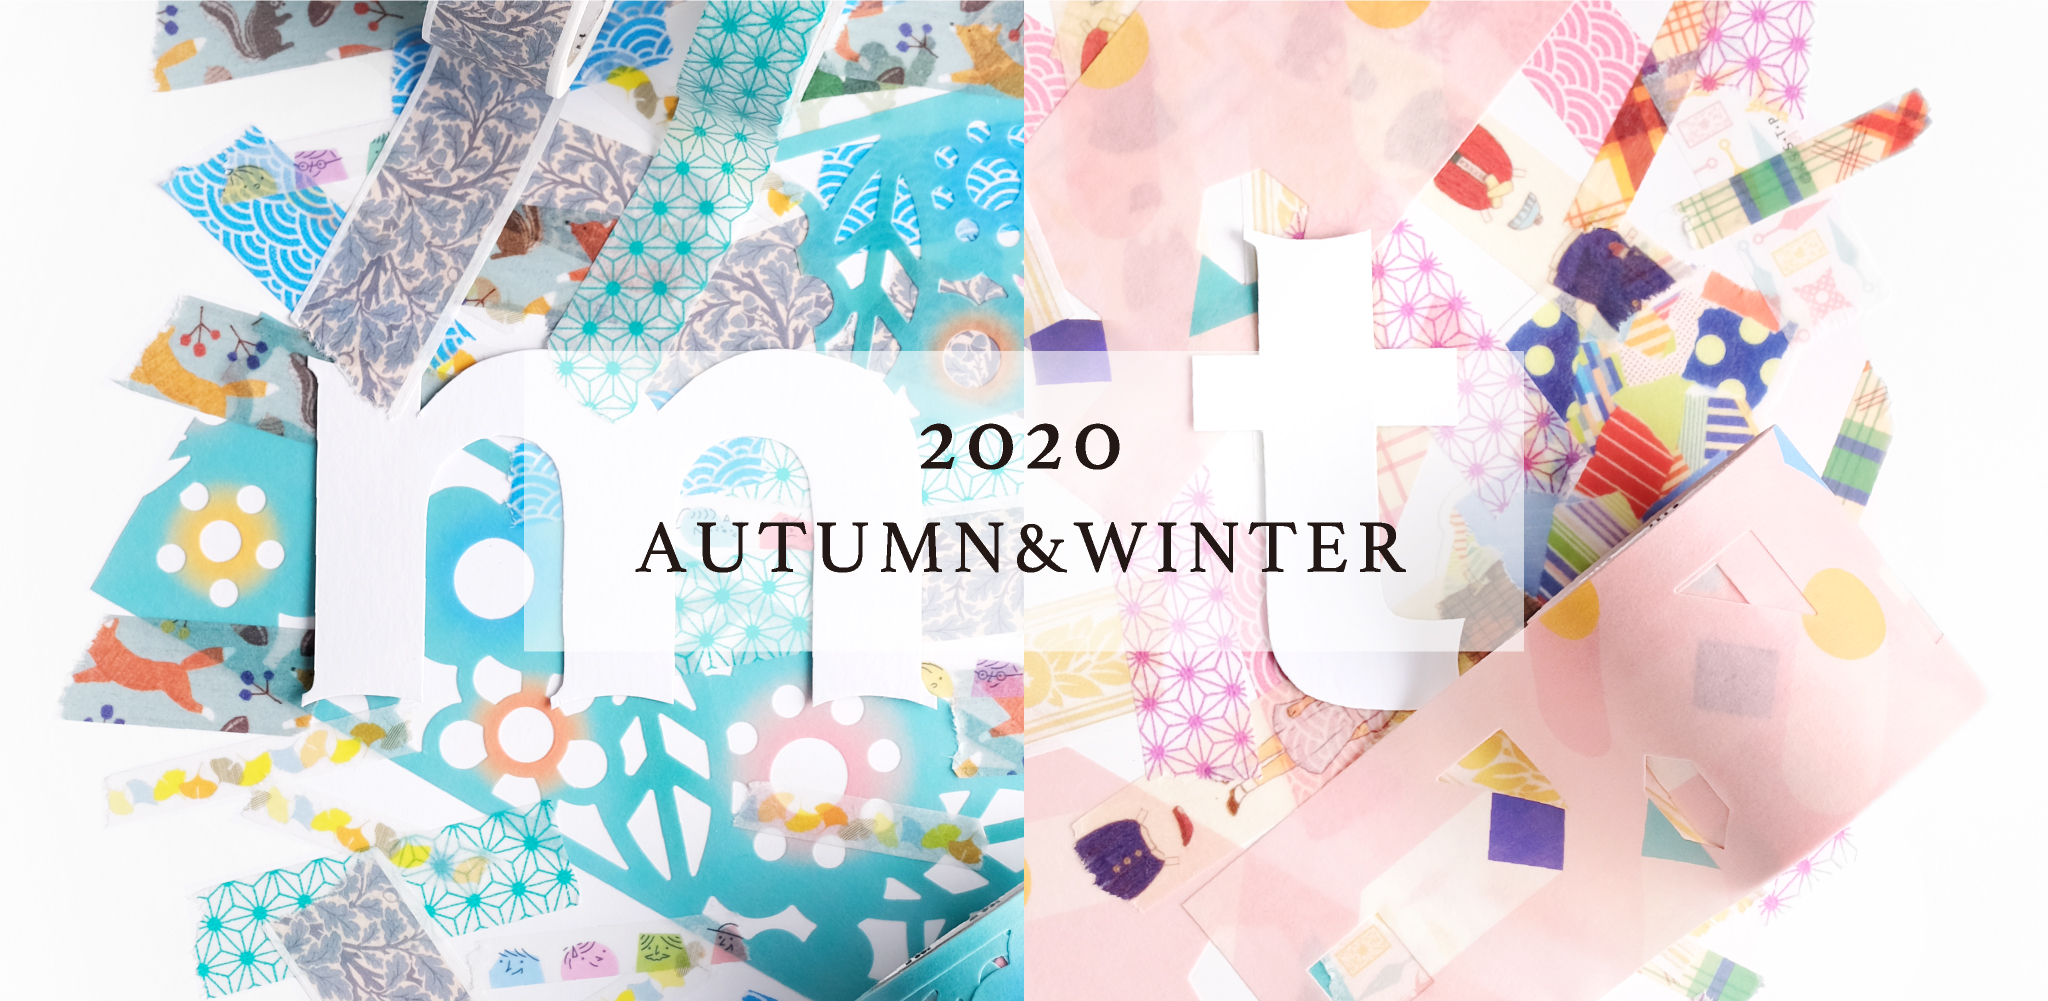 2020 AUTUMN & WINTER